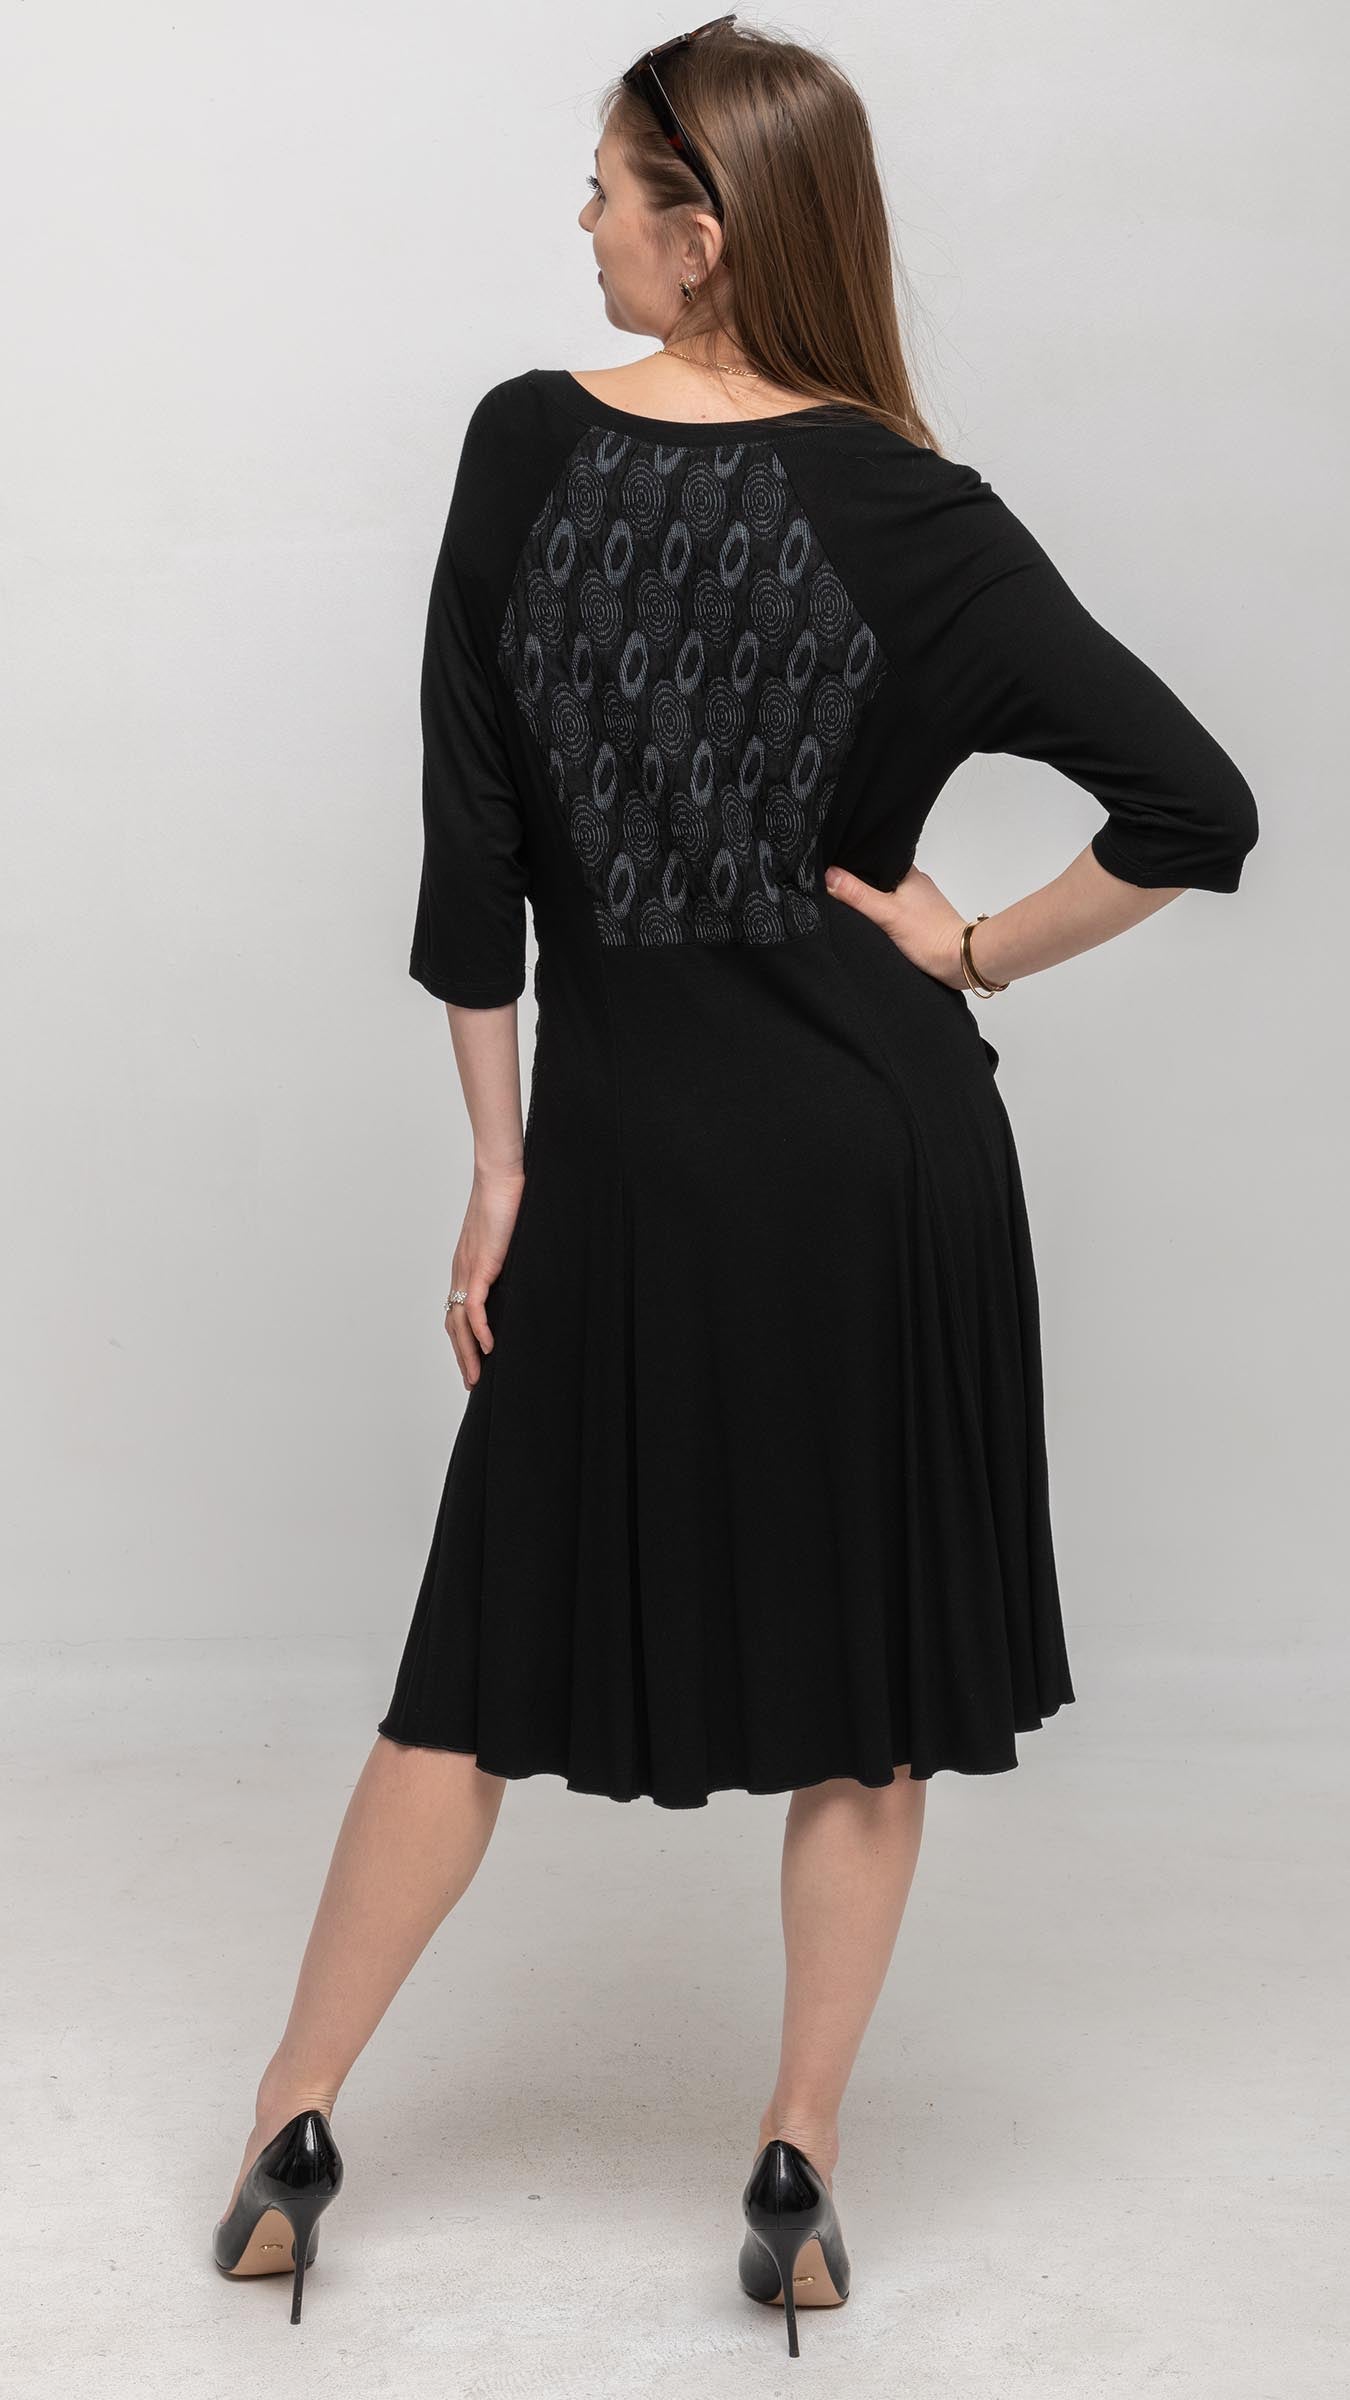 Buy Women's Short Black Flared Dresses Online